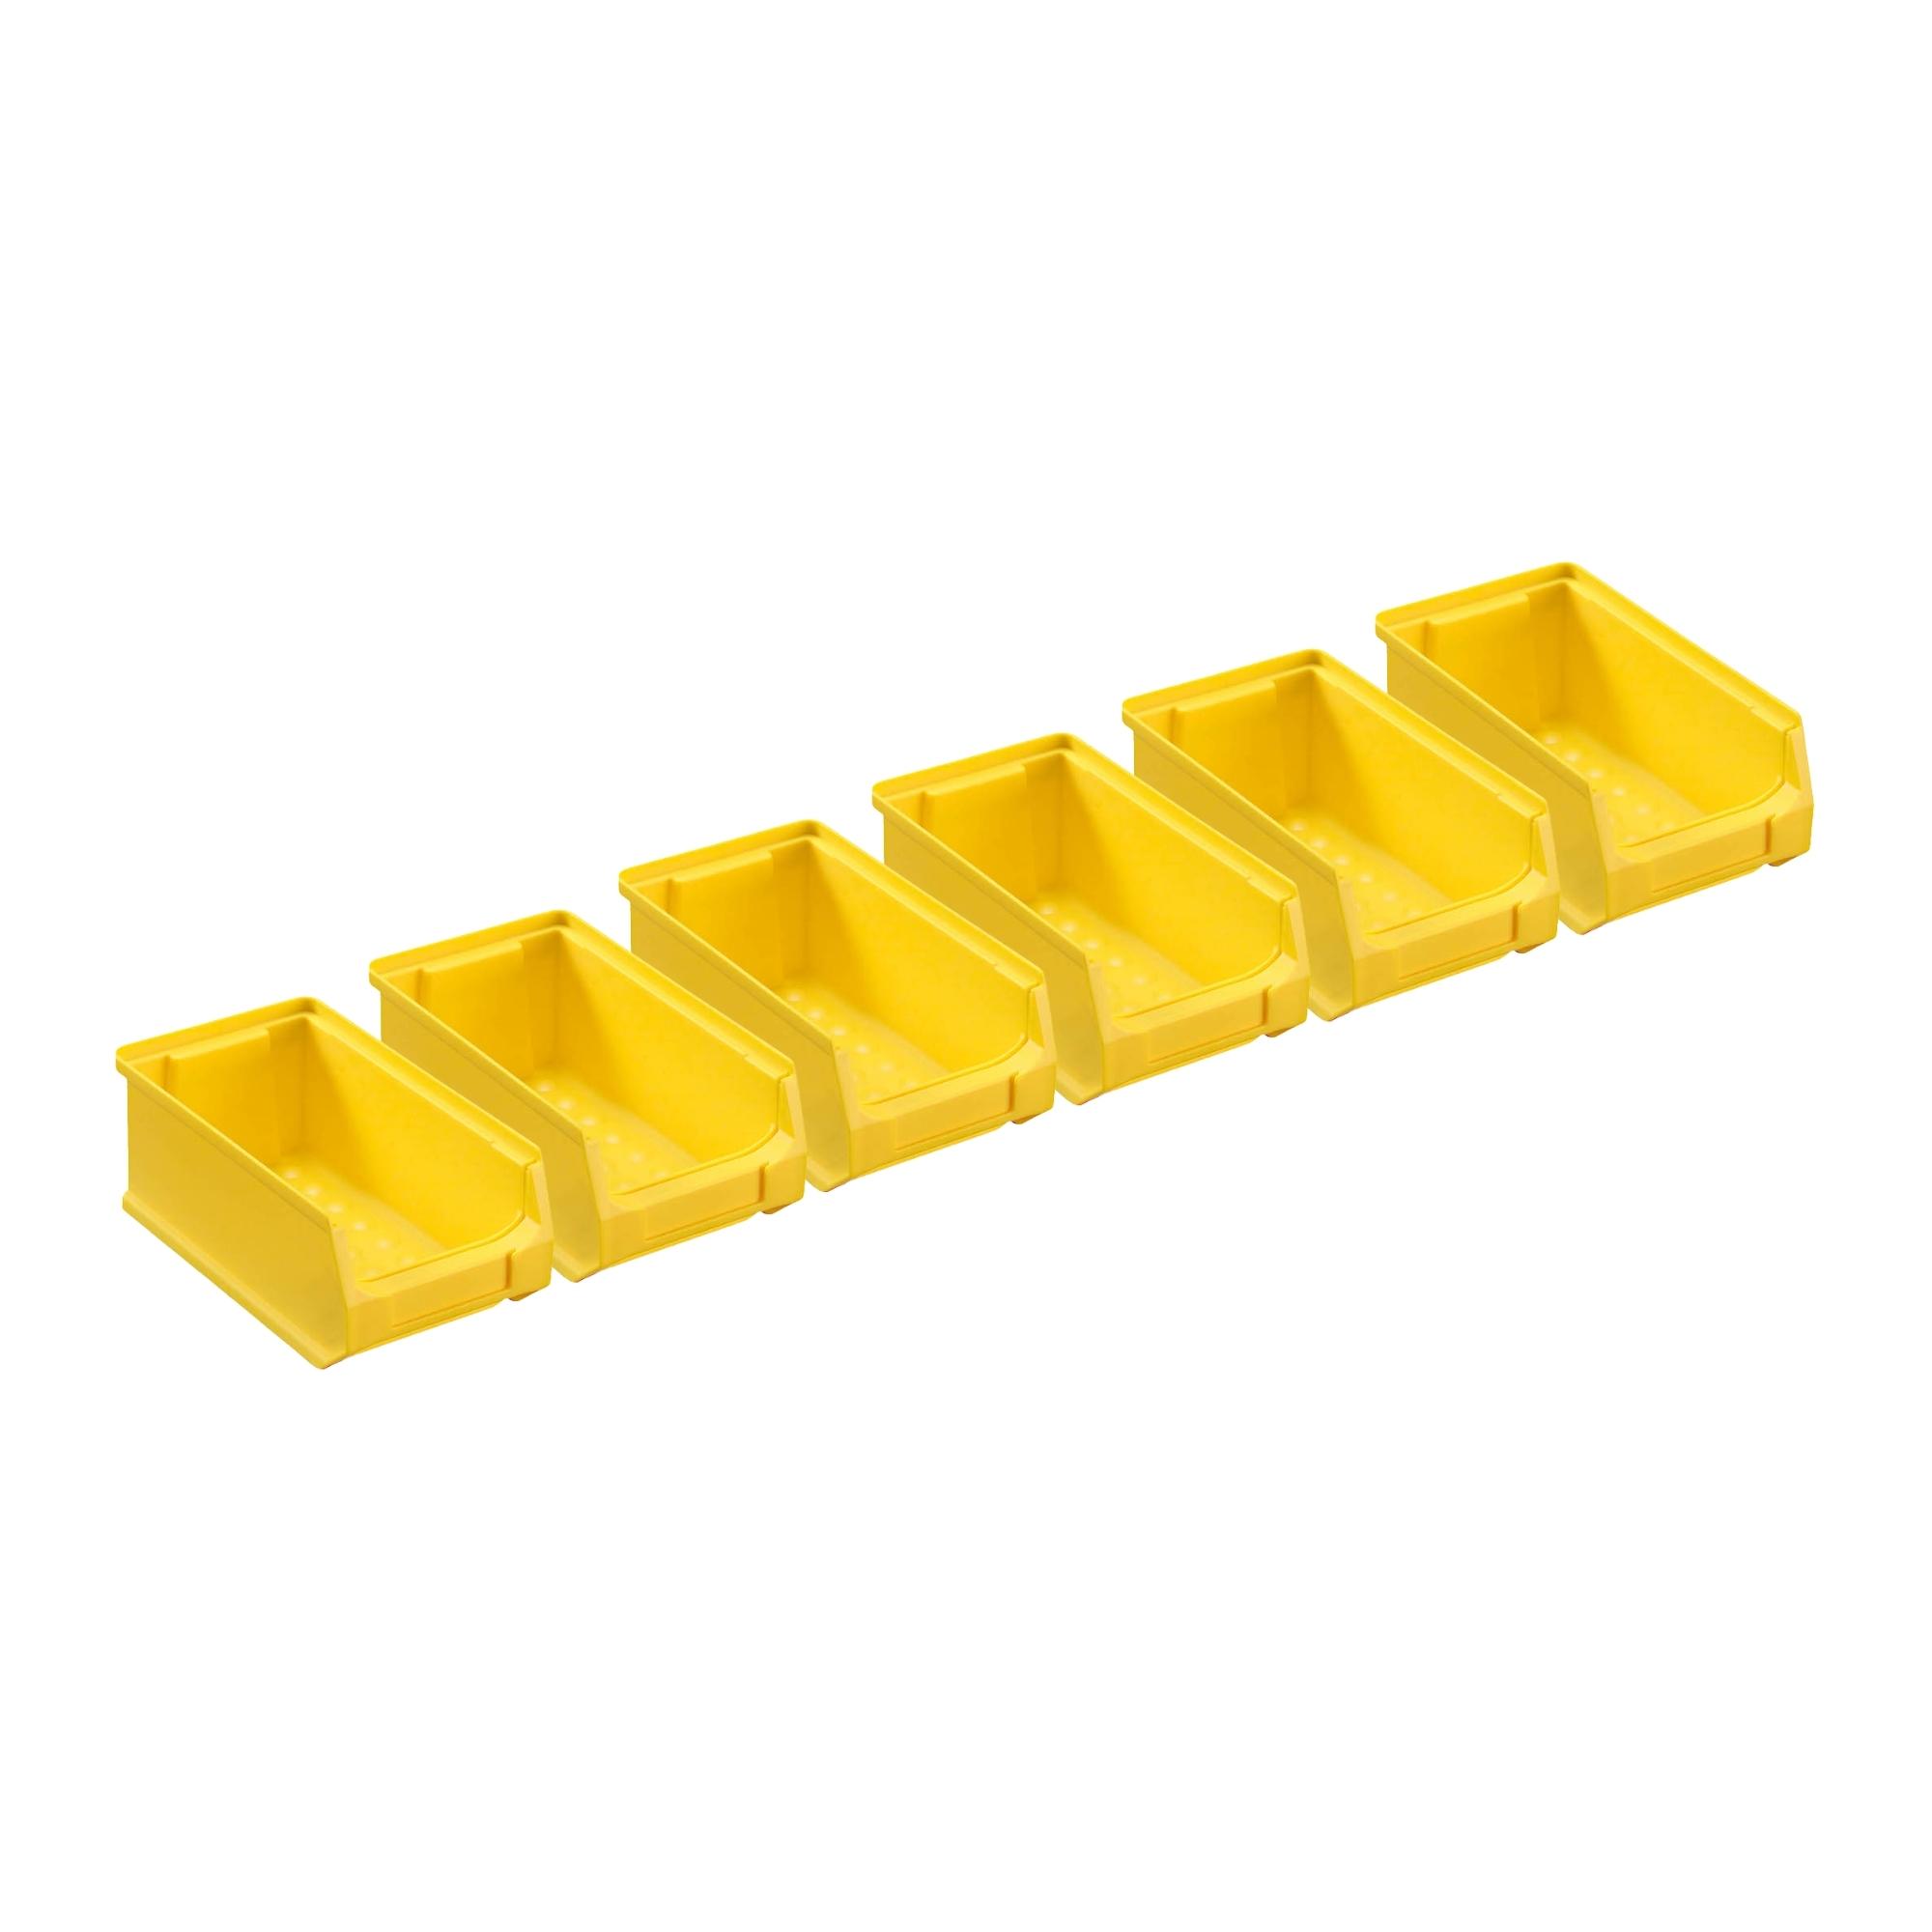 Wandleiste mit 6x Gelbe Sichtlagerbox 2.0 | HxBxT 7,6x60,5x17,6cm | Wandhalterung, Kleinteileaufbewahrung, Sortimentsboxhalterung